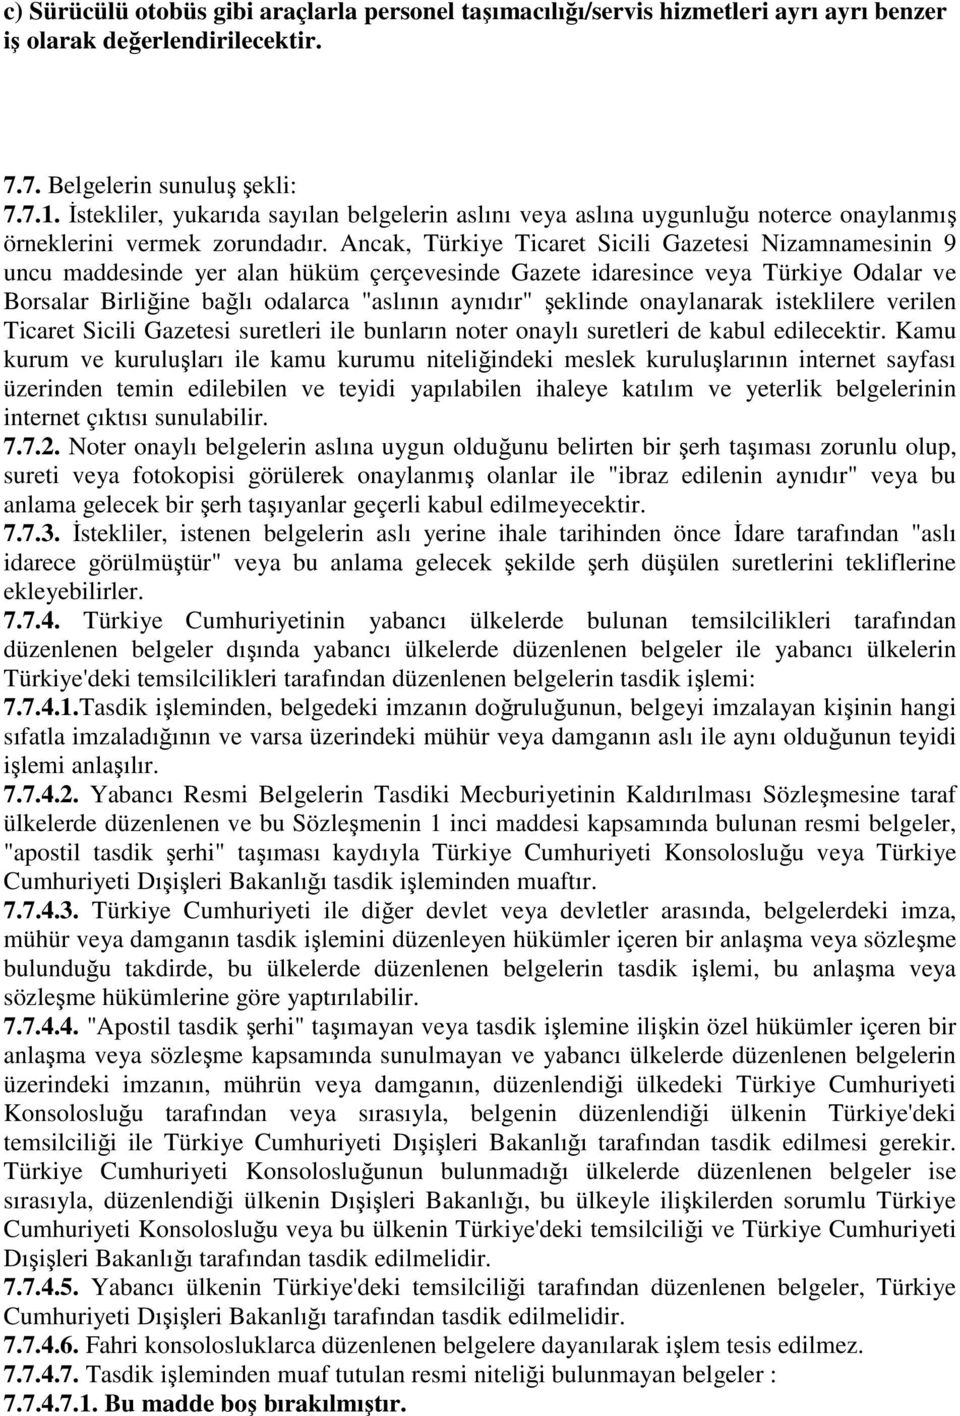 Ancak, Türkiye Ticaret Sicili Gazetesi Nizamnamesinin 9 uncu maddesinde yer alan hüküm çerçevesinde Gazete idaresince veya Türkiye Odalar ve Borsalar Birliğine bağlı odalarca "aslının aynıdır"